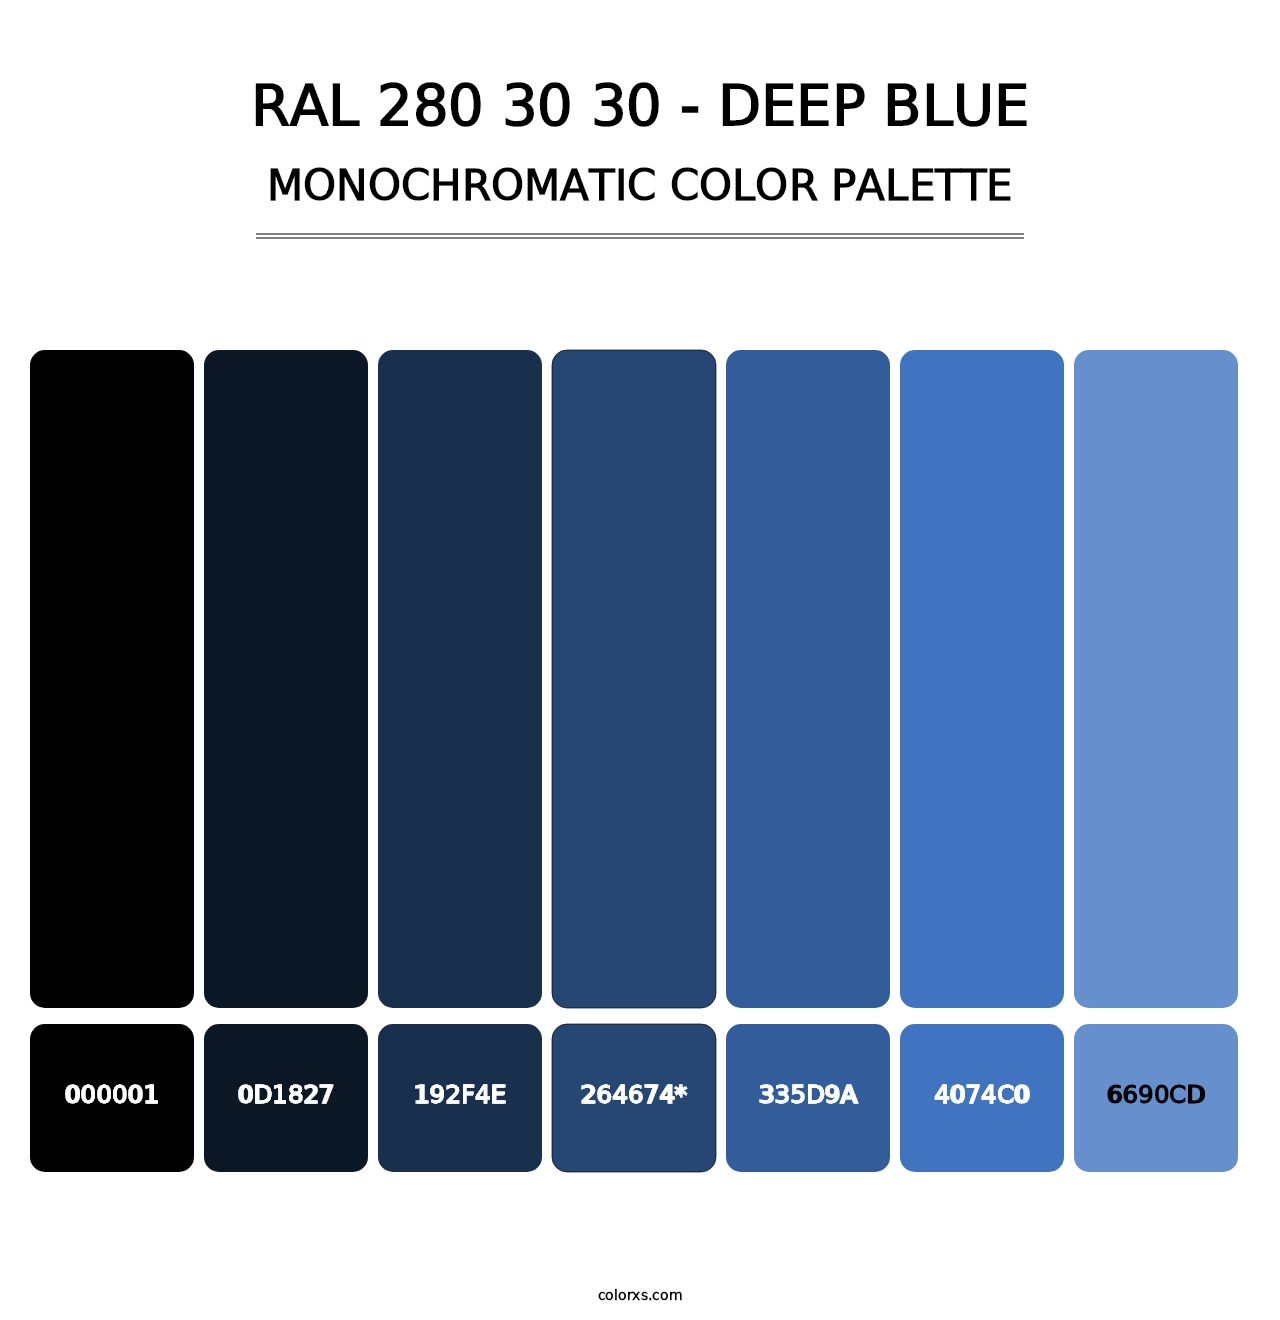 RAL 280 30 30 - Deep Blue - Monochromatic Color Palette